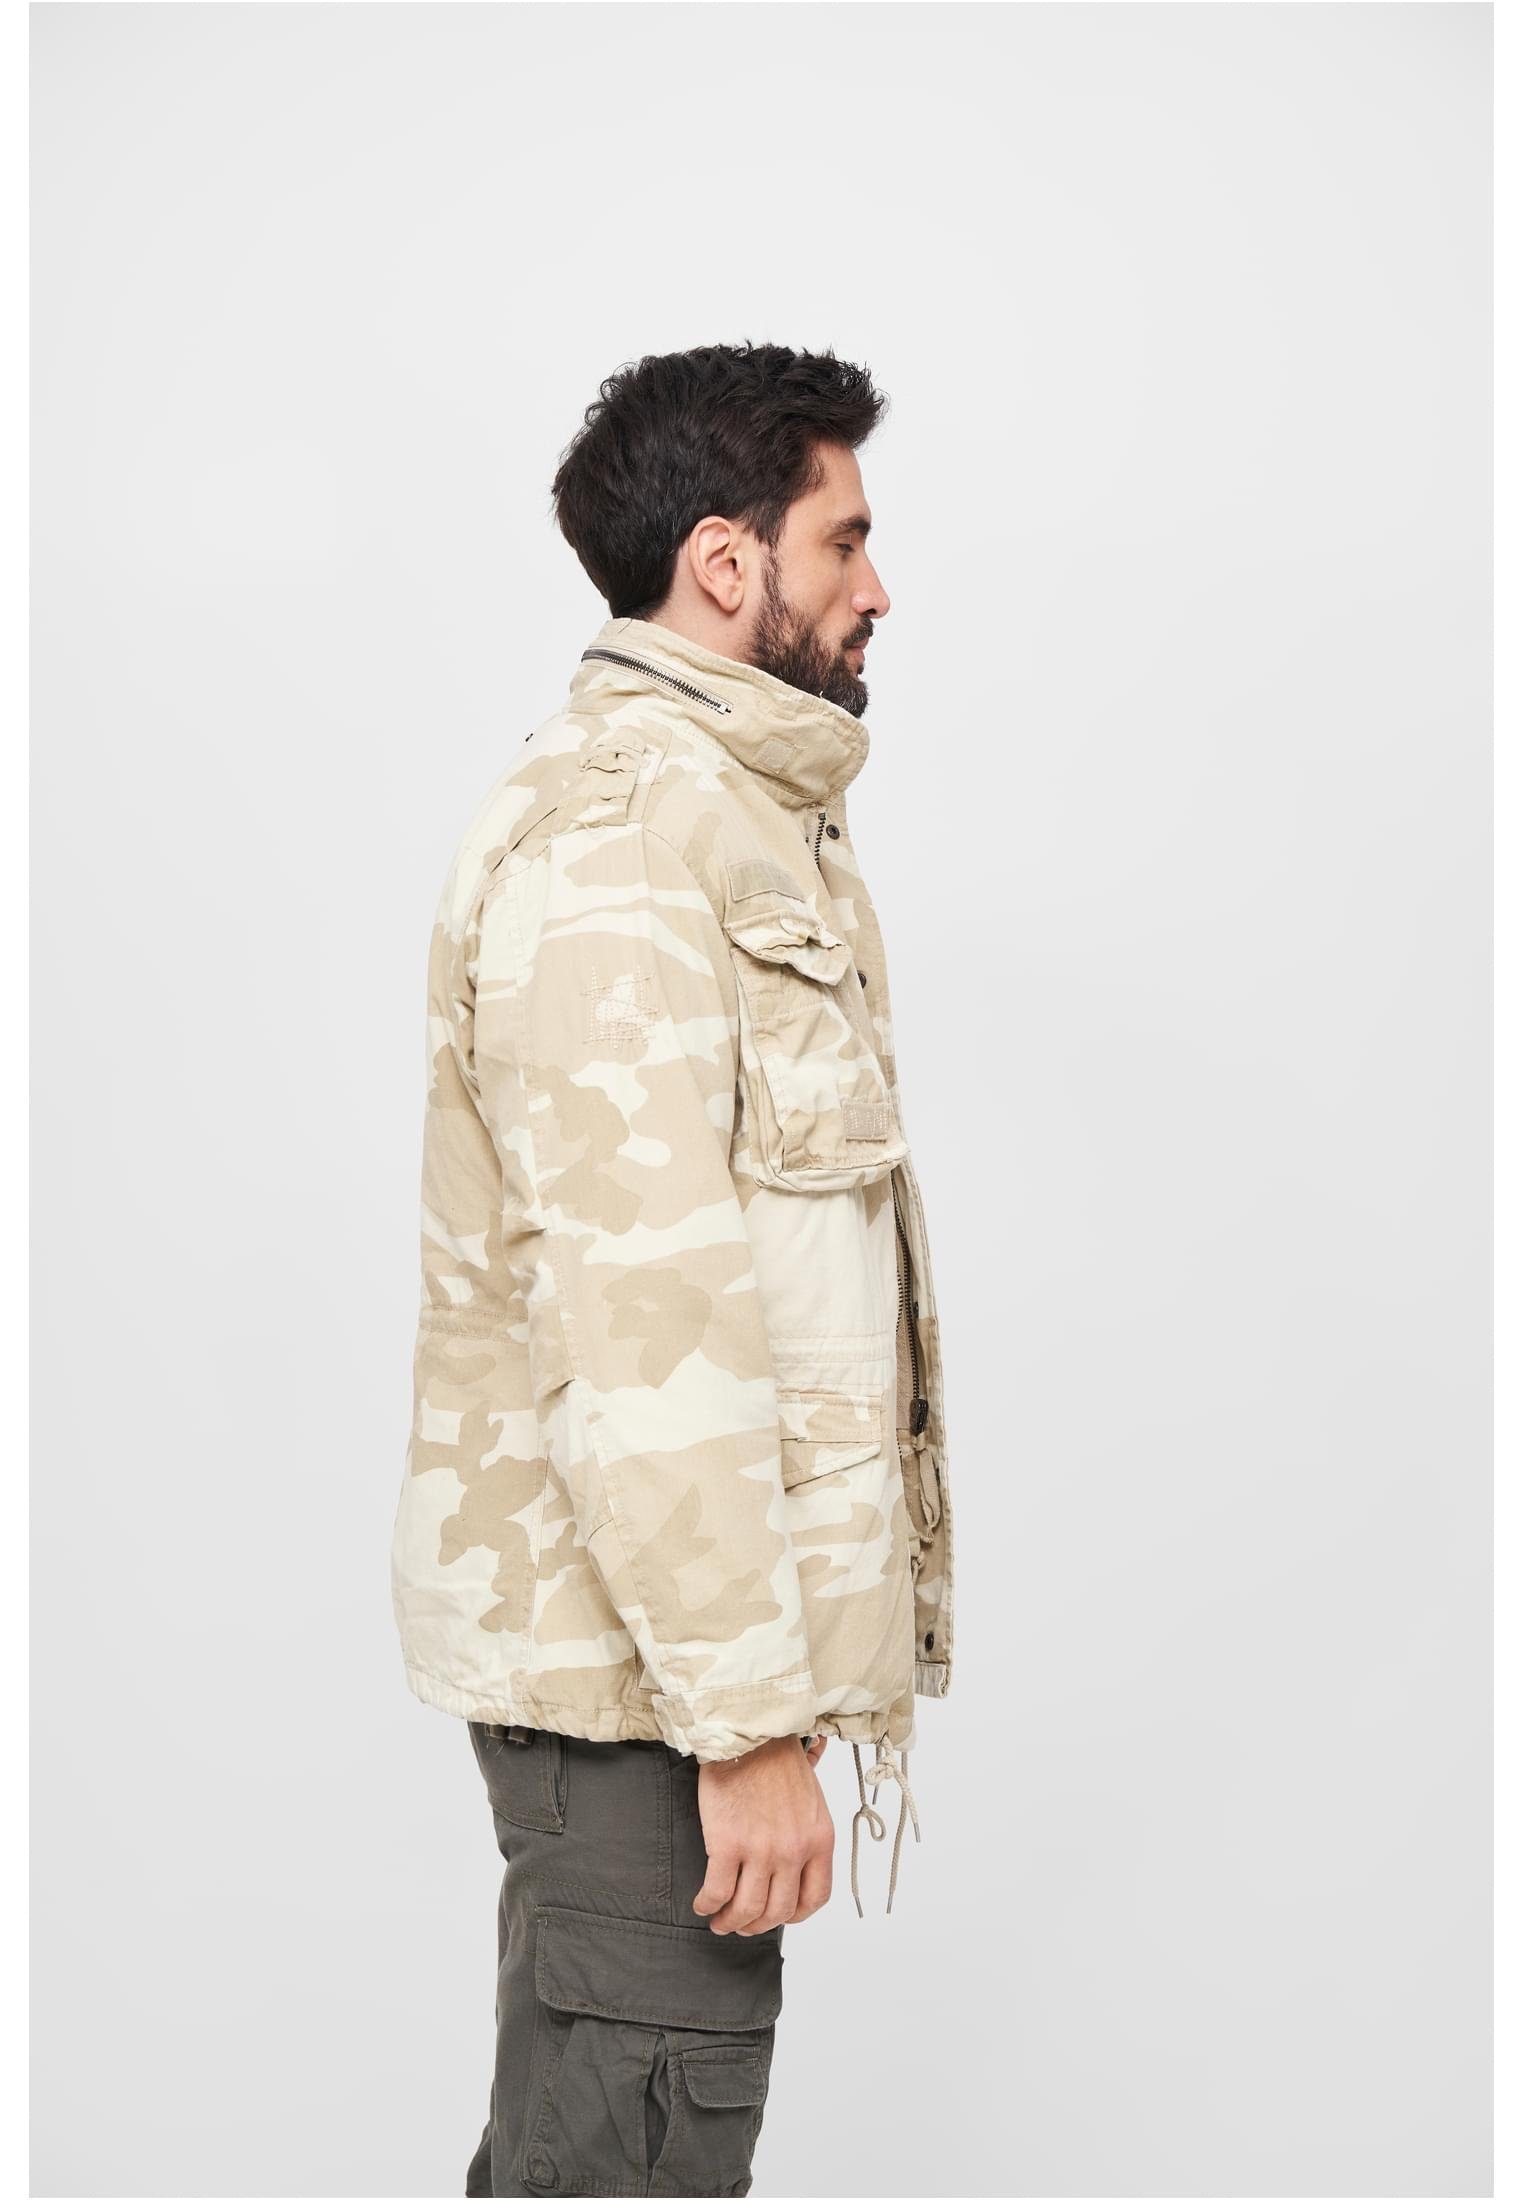 Giant camouflage Herren M-65 Brandit sand Jacket Wintermantel